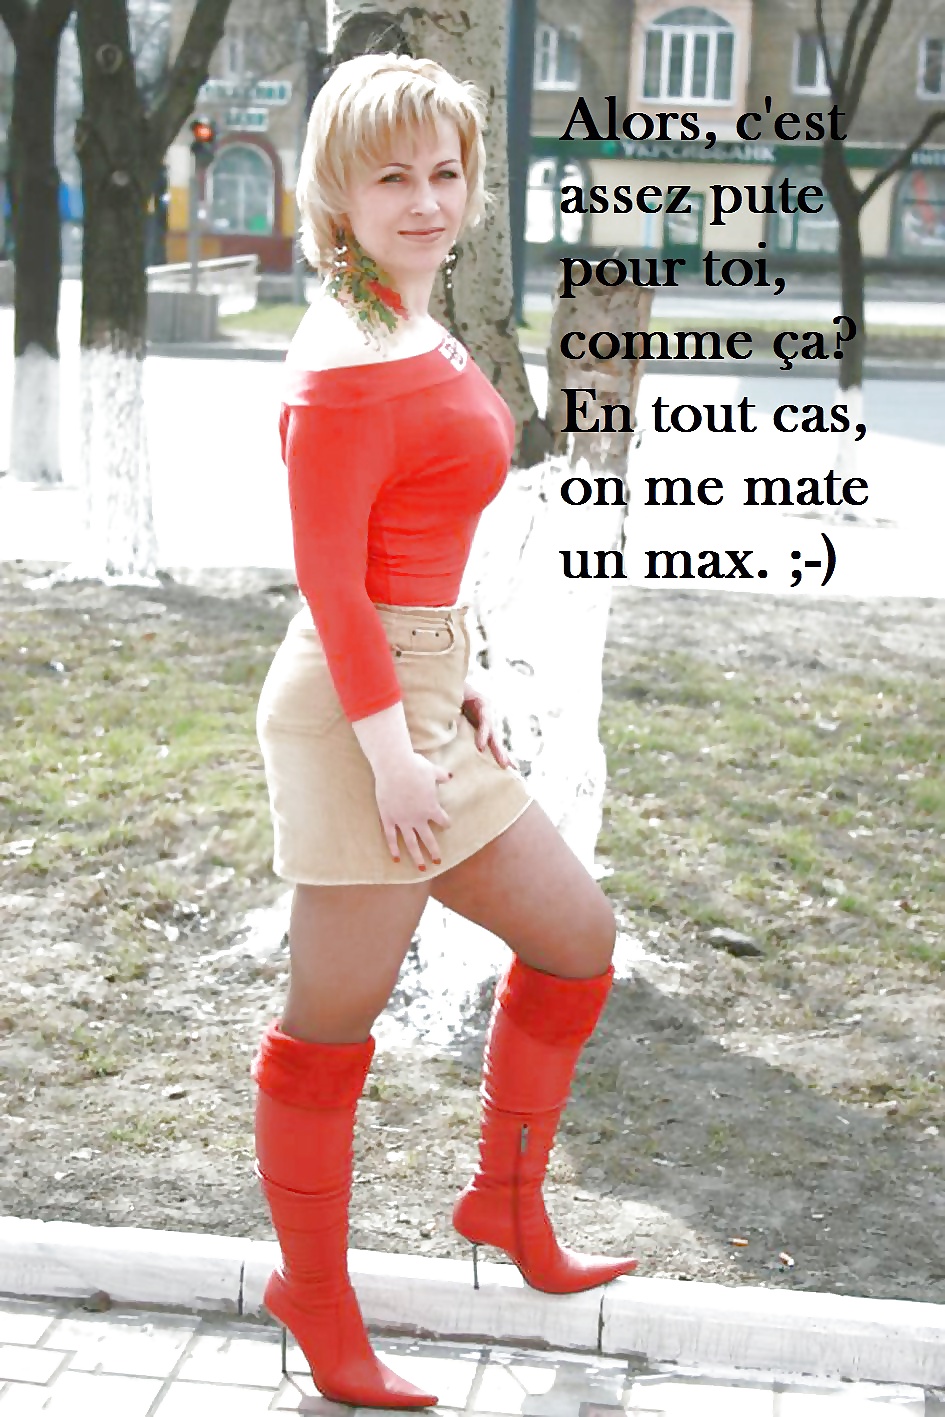 Legendes Cocu en francais (cuckold captions french) 6 #38842132